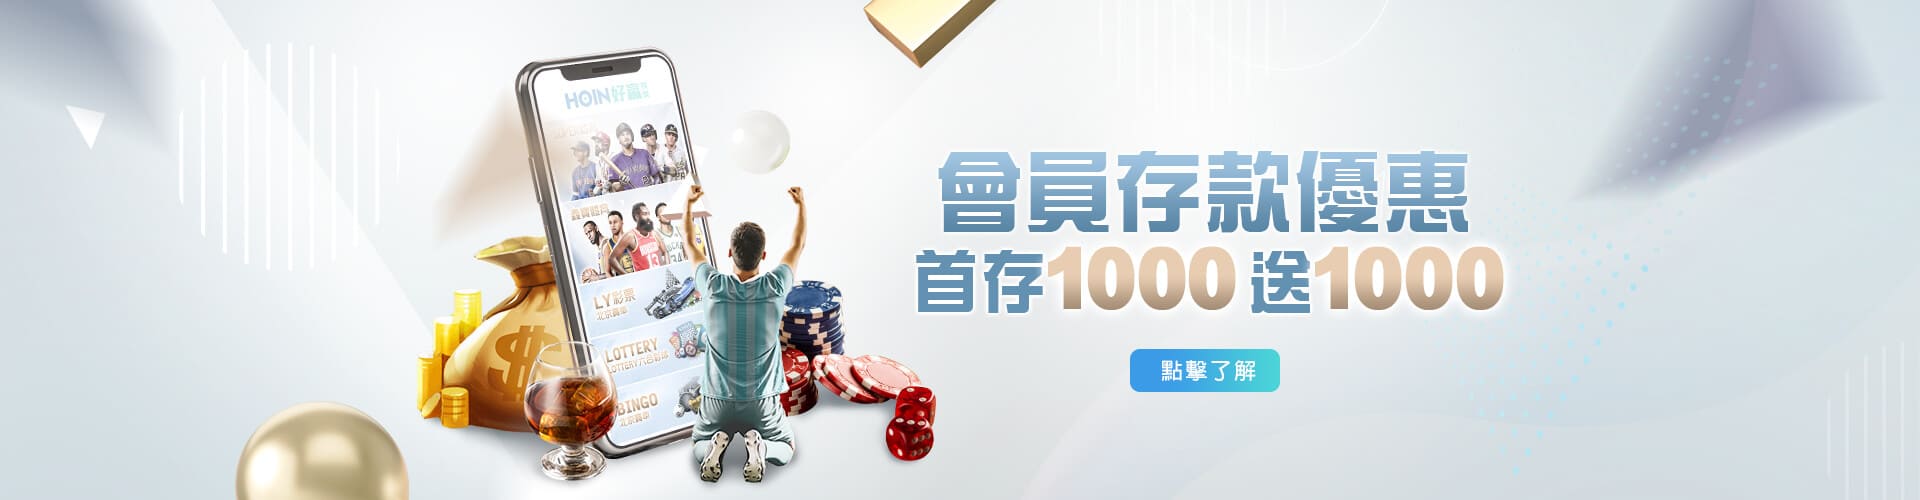 歐博娛樂城-最新消息存款1000送1000優惠